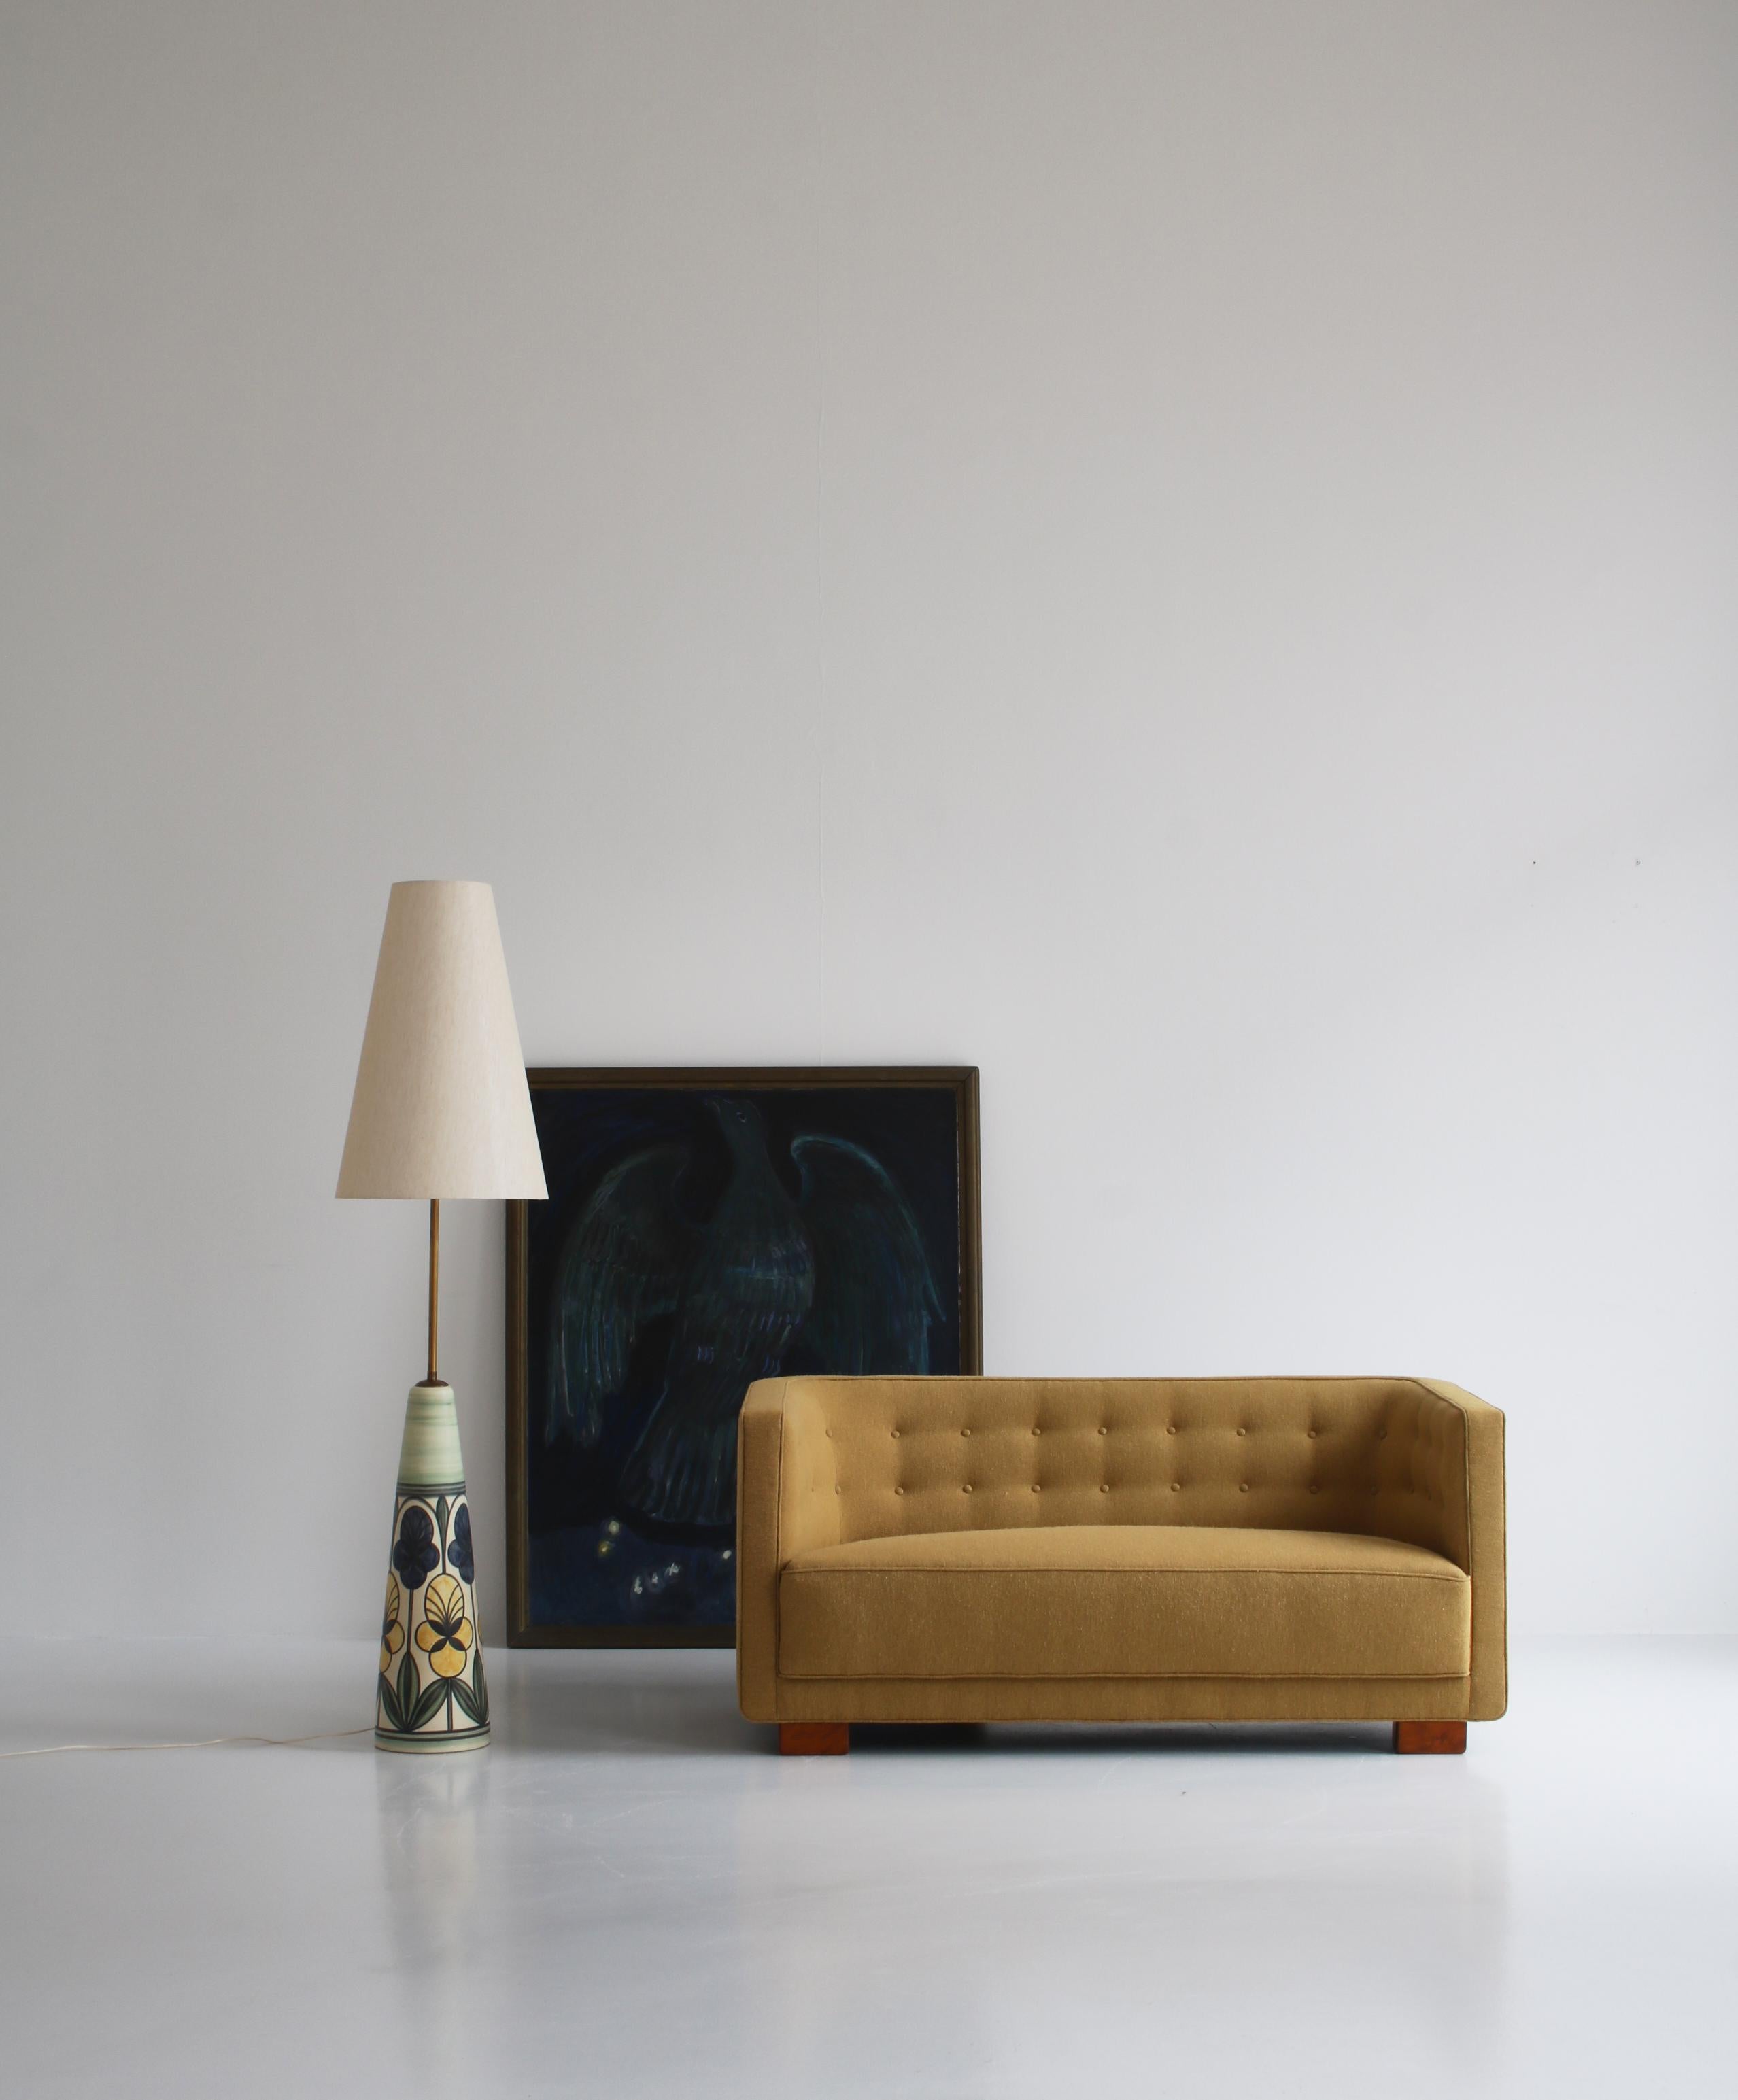 Étonnant canapé deux places Art déco précoce attribué à l'architecte danois Flemming Lassen et fabriqué par le magasin de meubles haut de gamme 